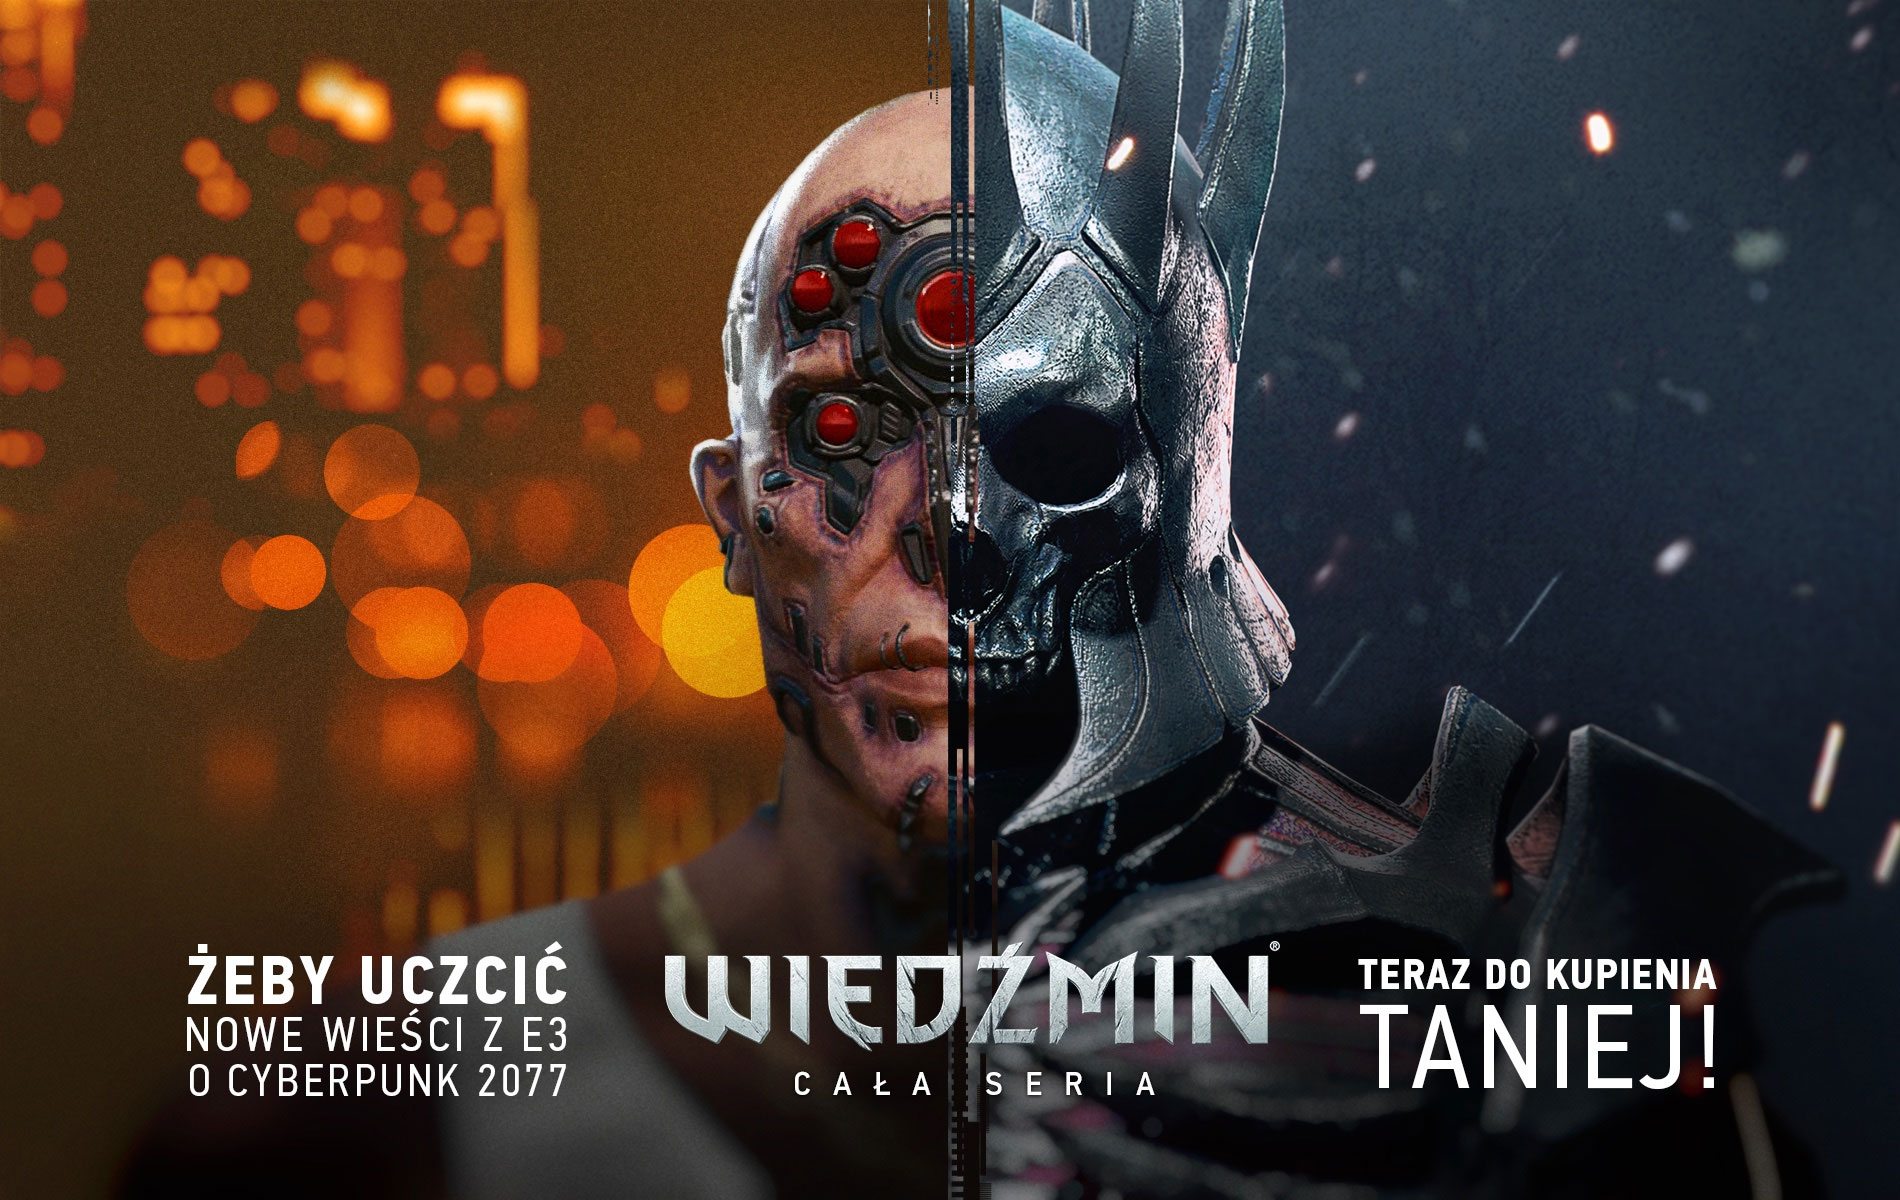 Gra za darmo, by uczcić pokaz Cyberpunk 2077 na E3 2018